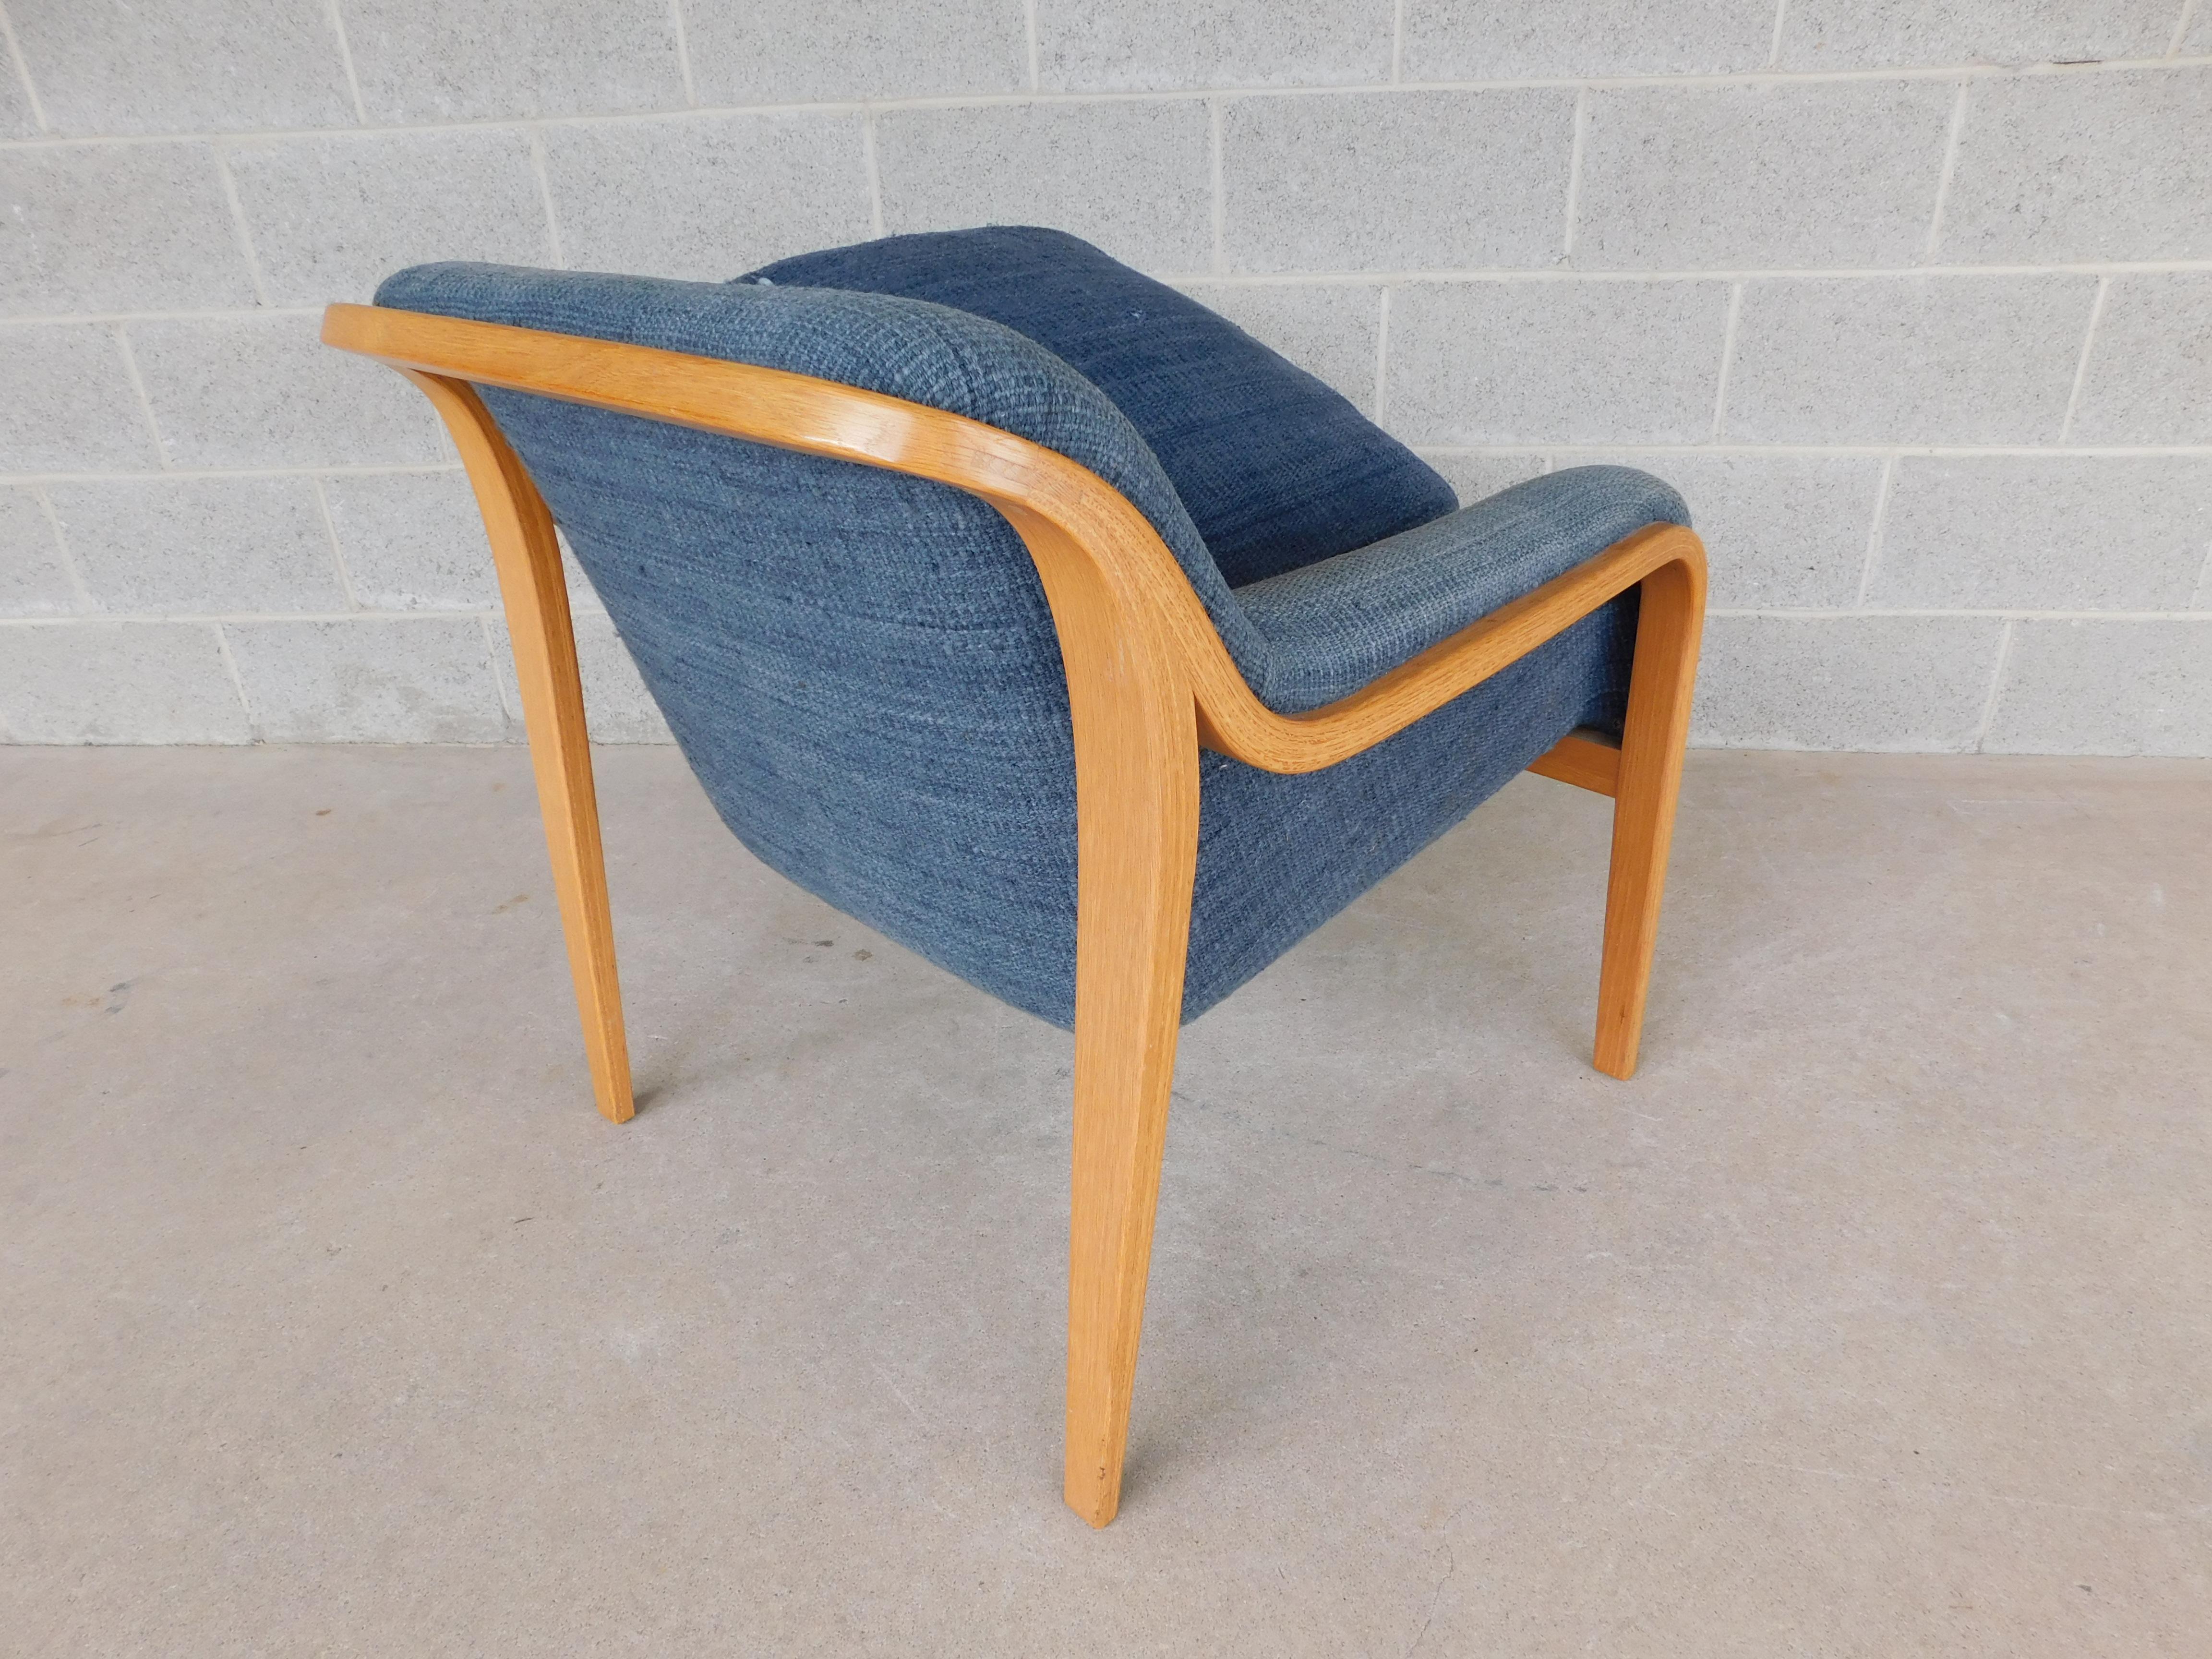 Chaise longue en bois courbé. Recouvert d'une tapisserie vintage bleu clair/moyen. Conçu par Bill Stephens pour Knoll. Le rembourrage d'origine est doté de fermoirs. Les fonds de coussin du rembourrage et les zones de contact avec les coussins sous